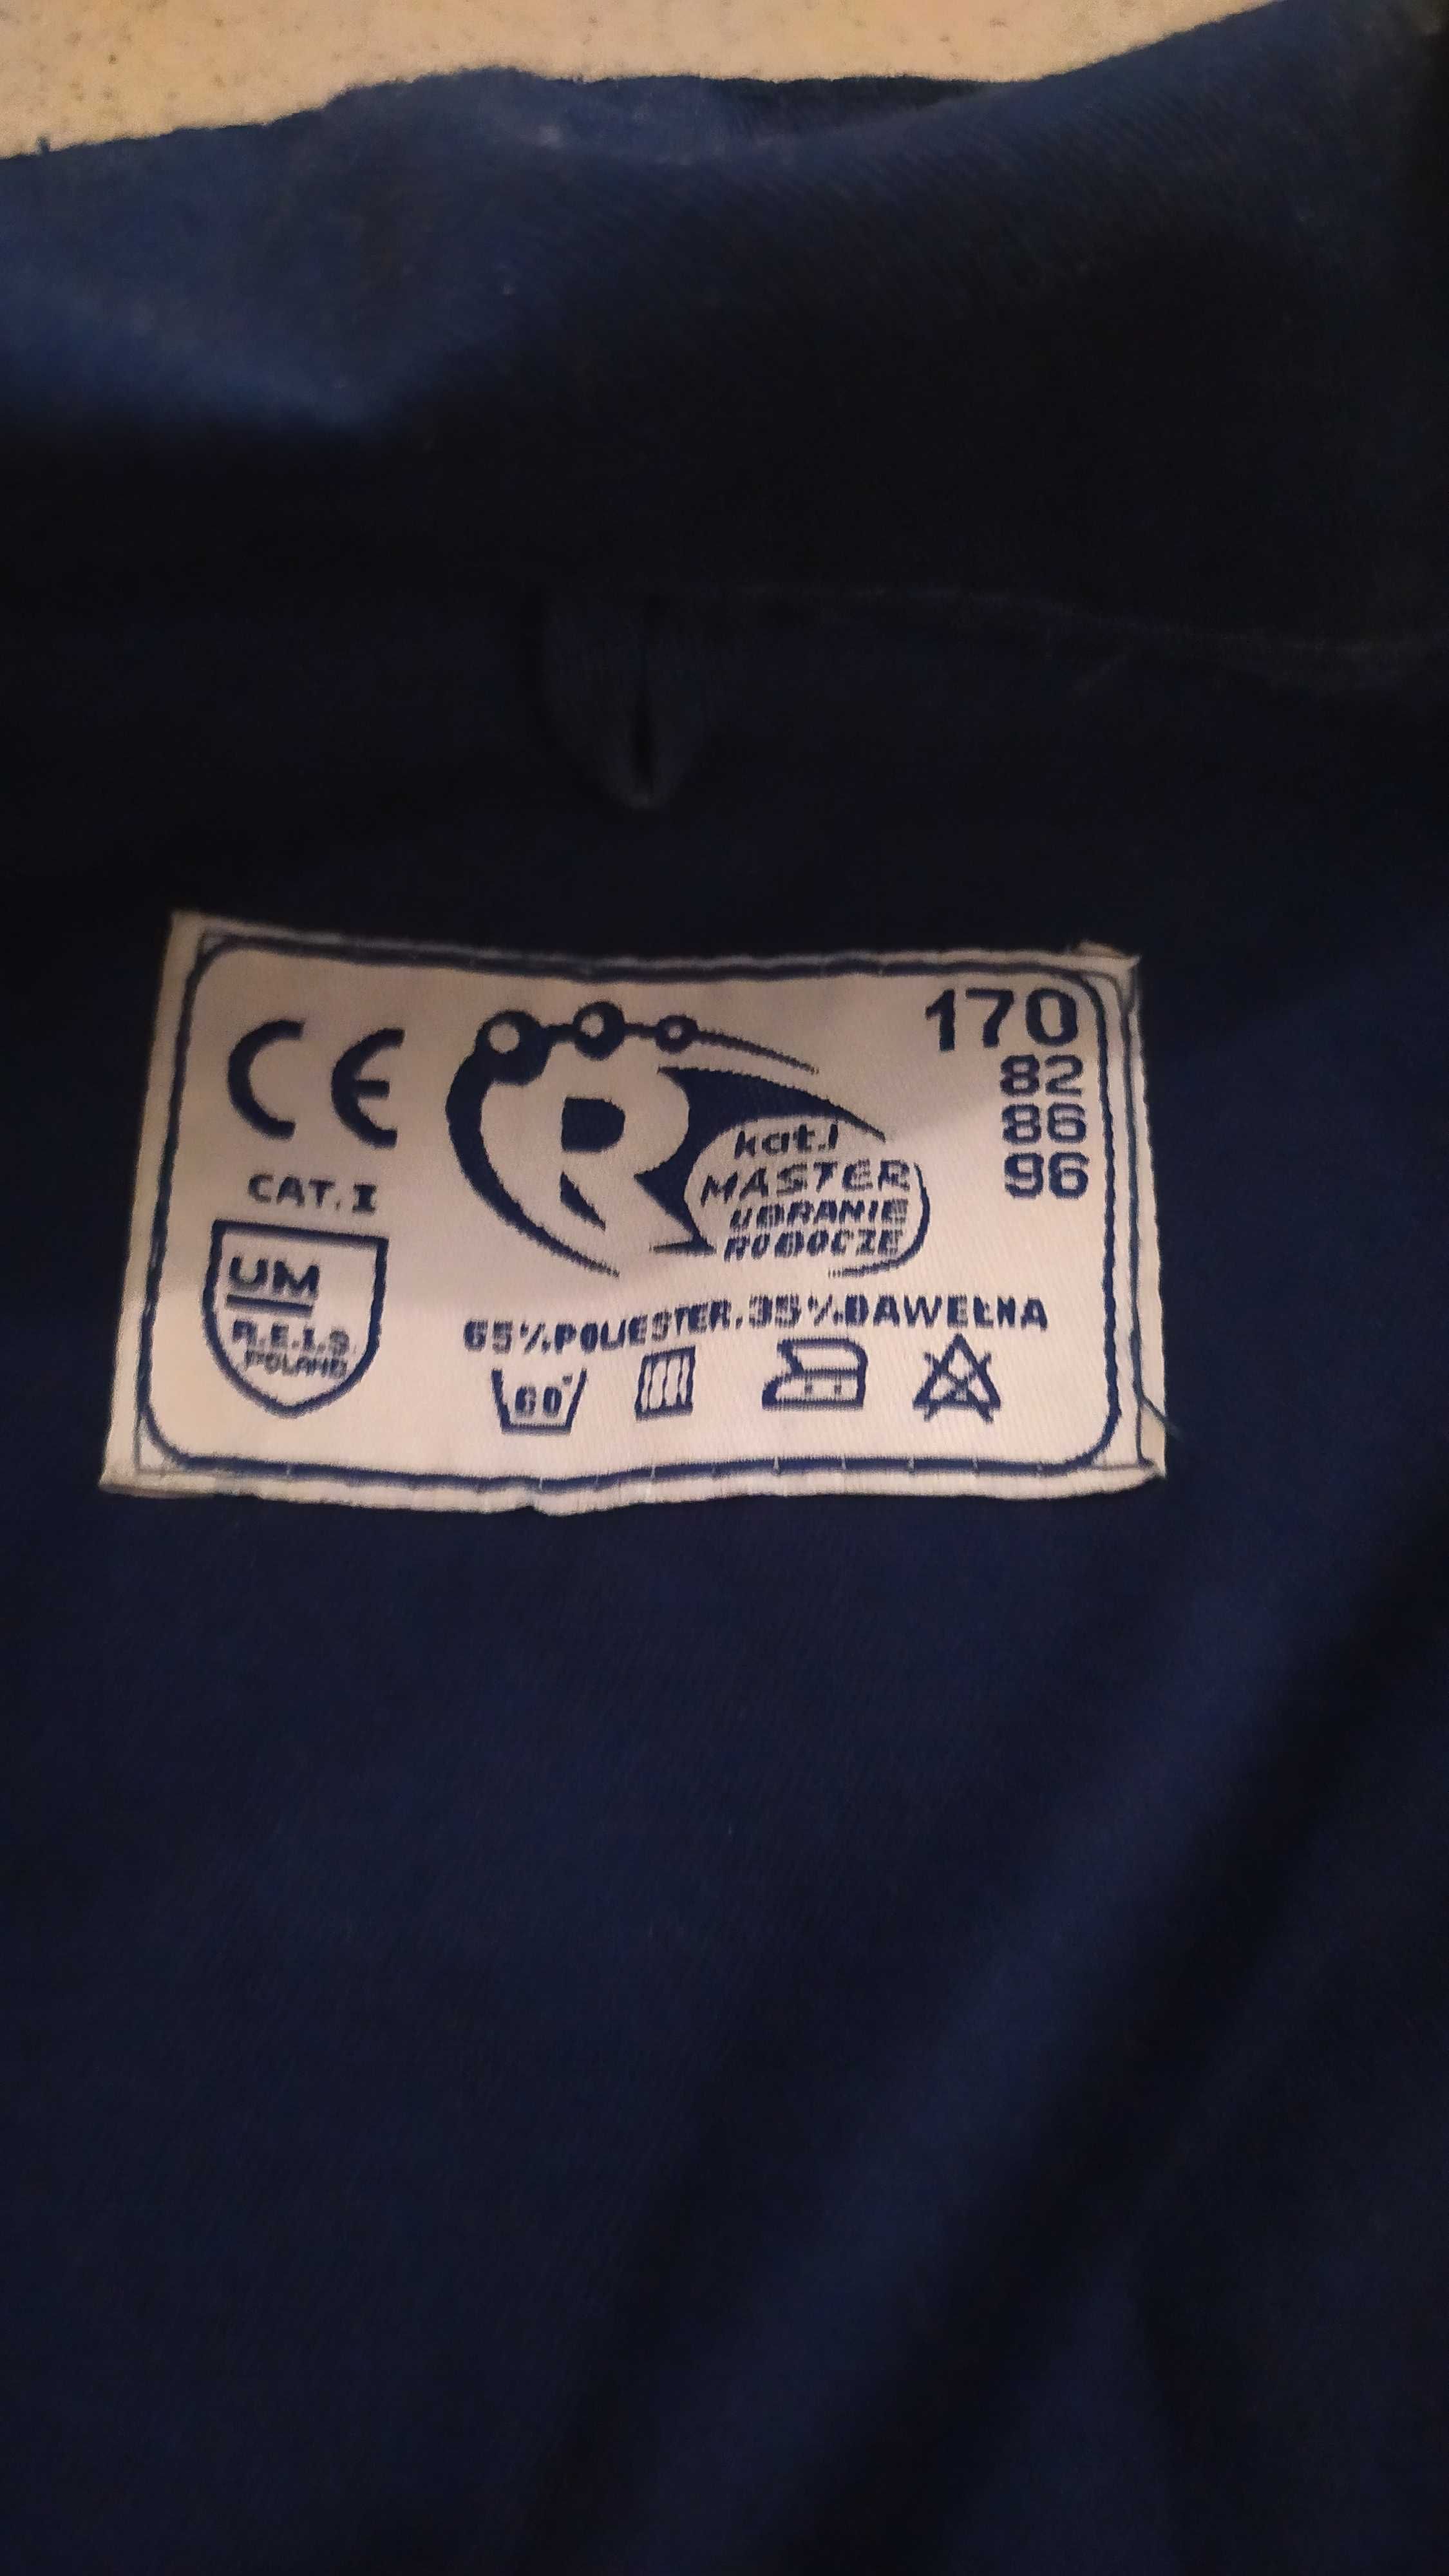 Ubranie robocze firmy Master rozm 170 nowe bluza kurtka S M